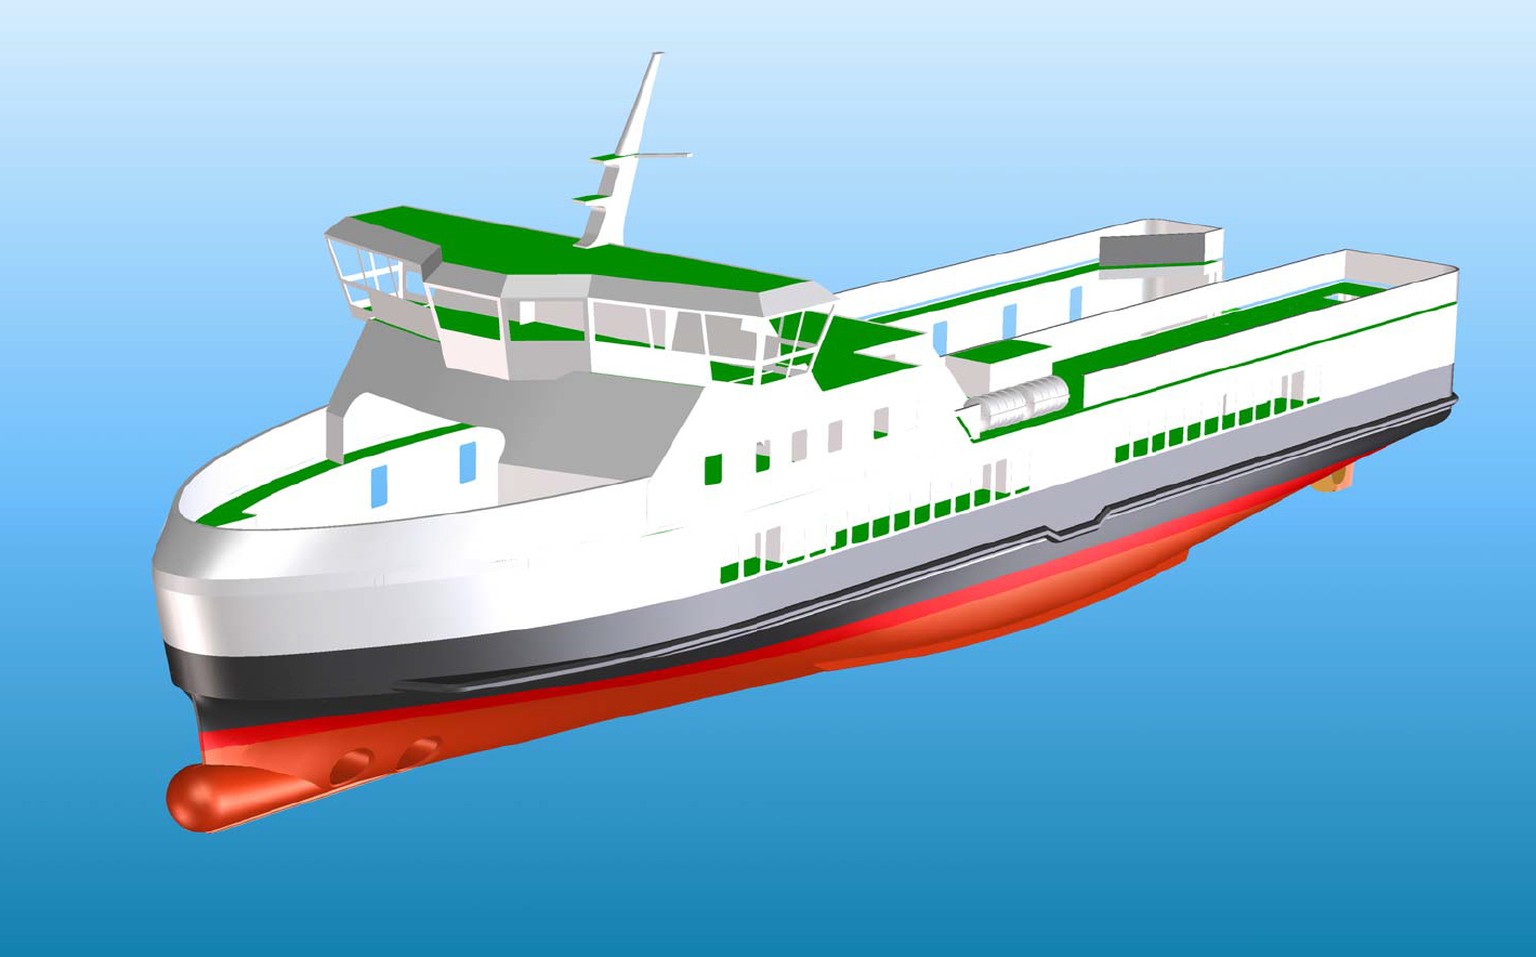 Das Fährschiff, das von der dänischen Werft Söby Shipyard gebaut wird, soll ab 2017 zwischen der Insel Aerö und dem dänischen Festland verkehren.